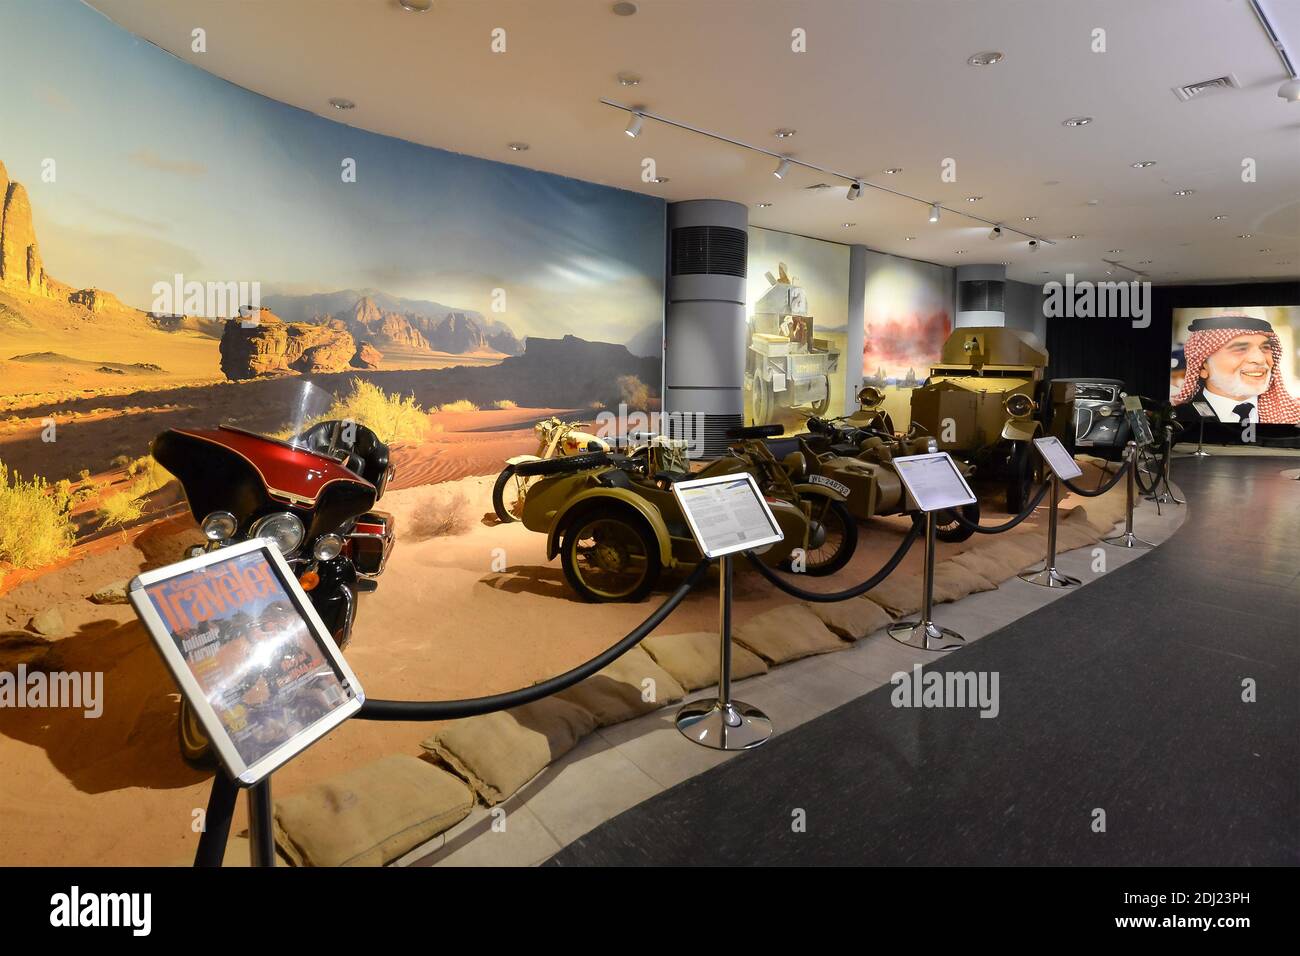 Motorcylces en exposition au Musée royal de l'automobile à Amman, en Jordanie. Véhicules faisant partie de la collection personnelle du roi Hussein bin Ali. Intérieur du musée. Banque D'Images